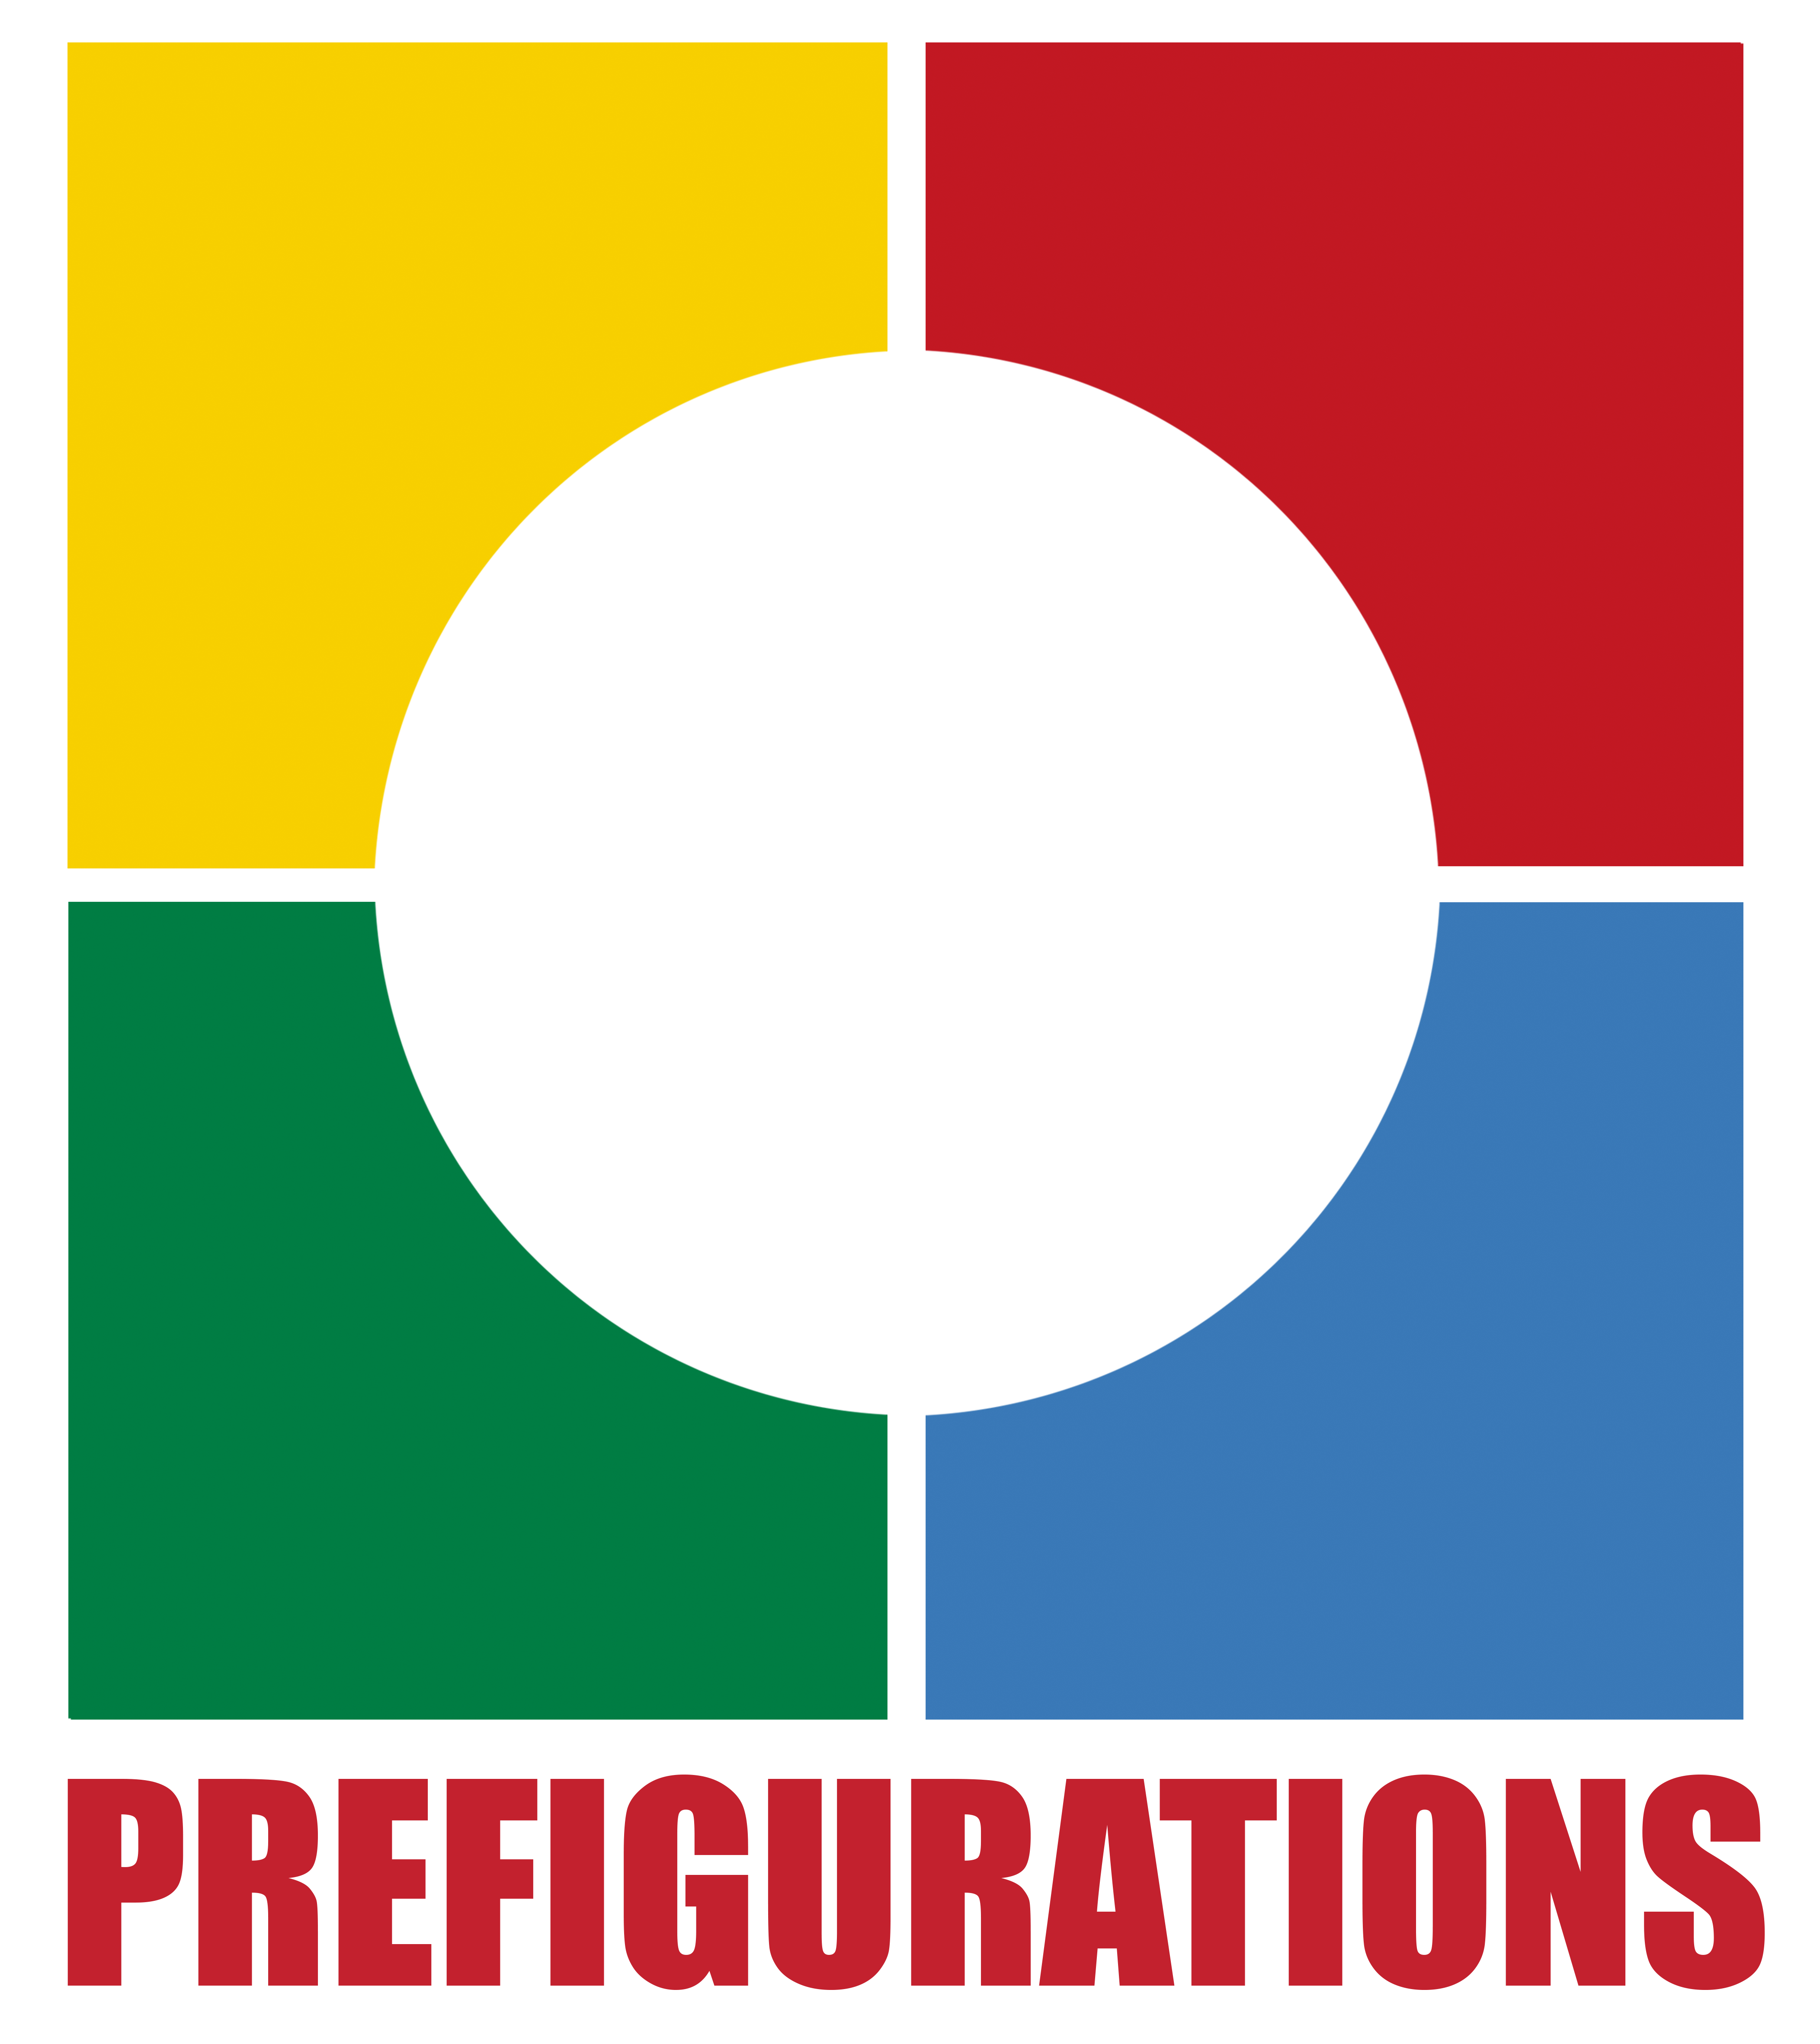 LOGO-Prefigurations-carre-txte-rouge-2019